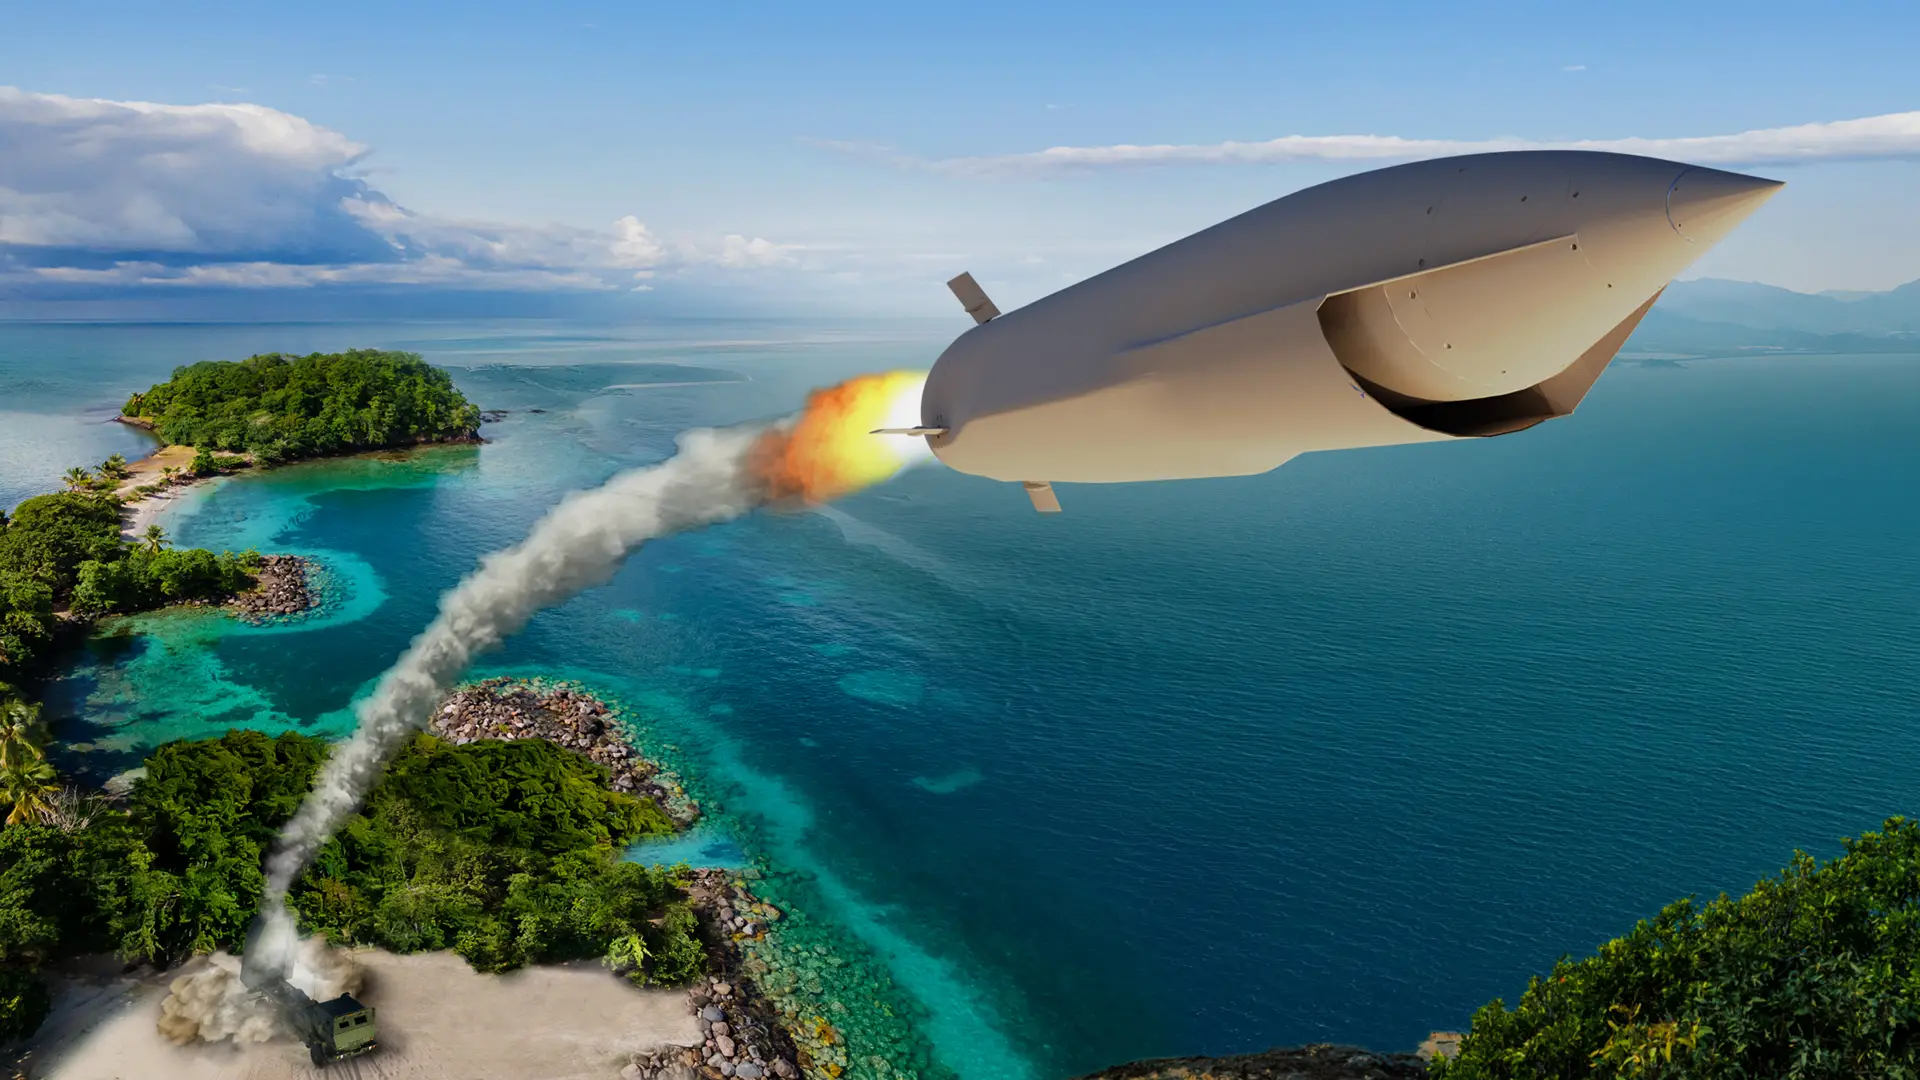 Aerojet Rocketdyne entwickelt Triebwerk für hochpräzisen LRMF-Flugkörper mit einer maximalen Startreichweite von mehr als 1.000 km